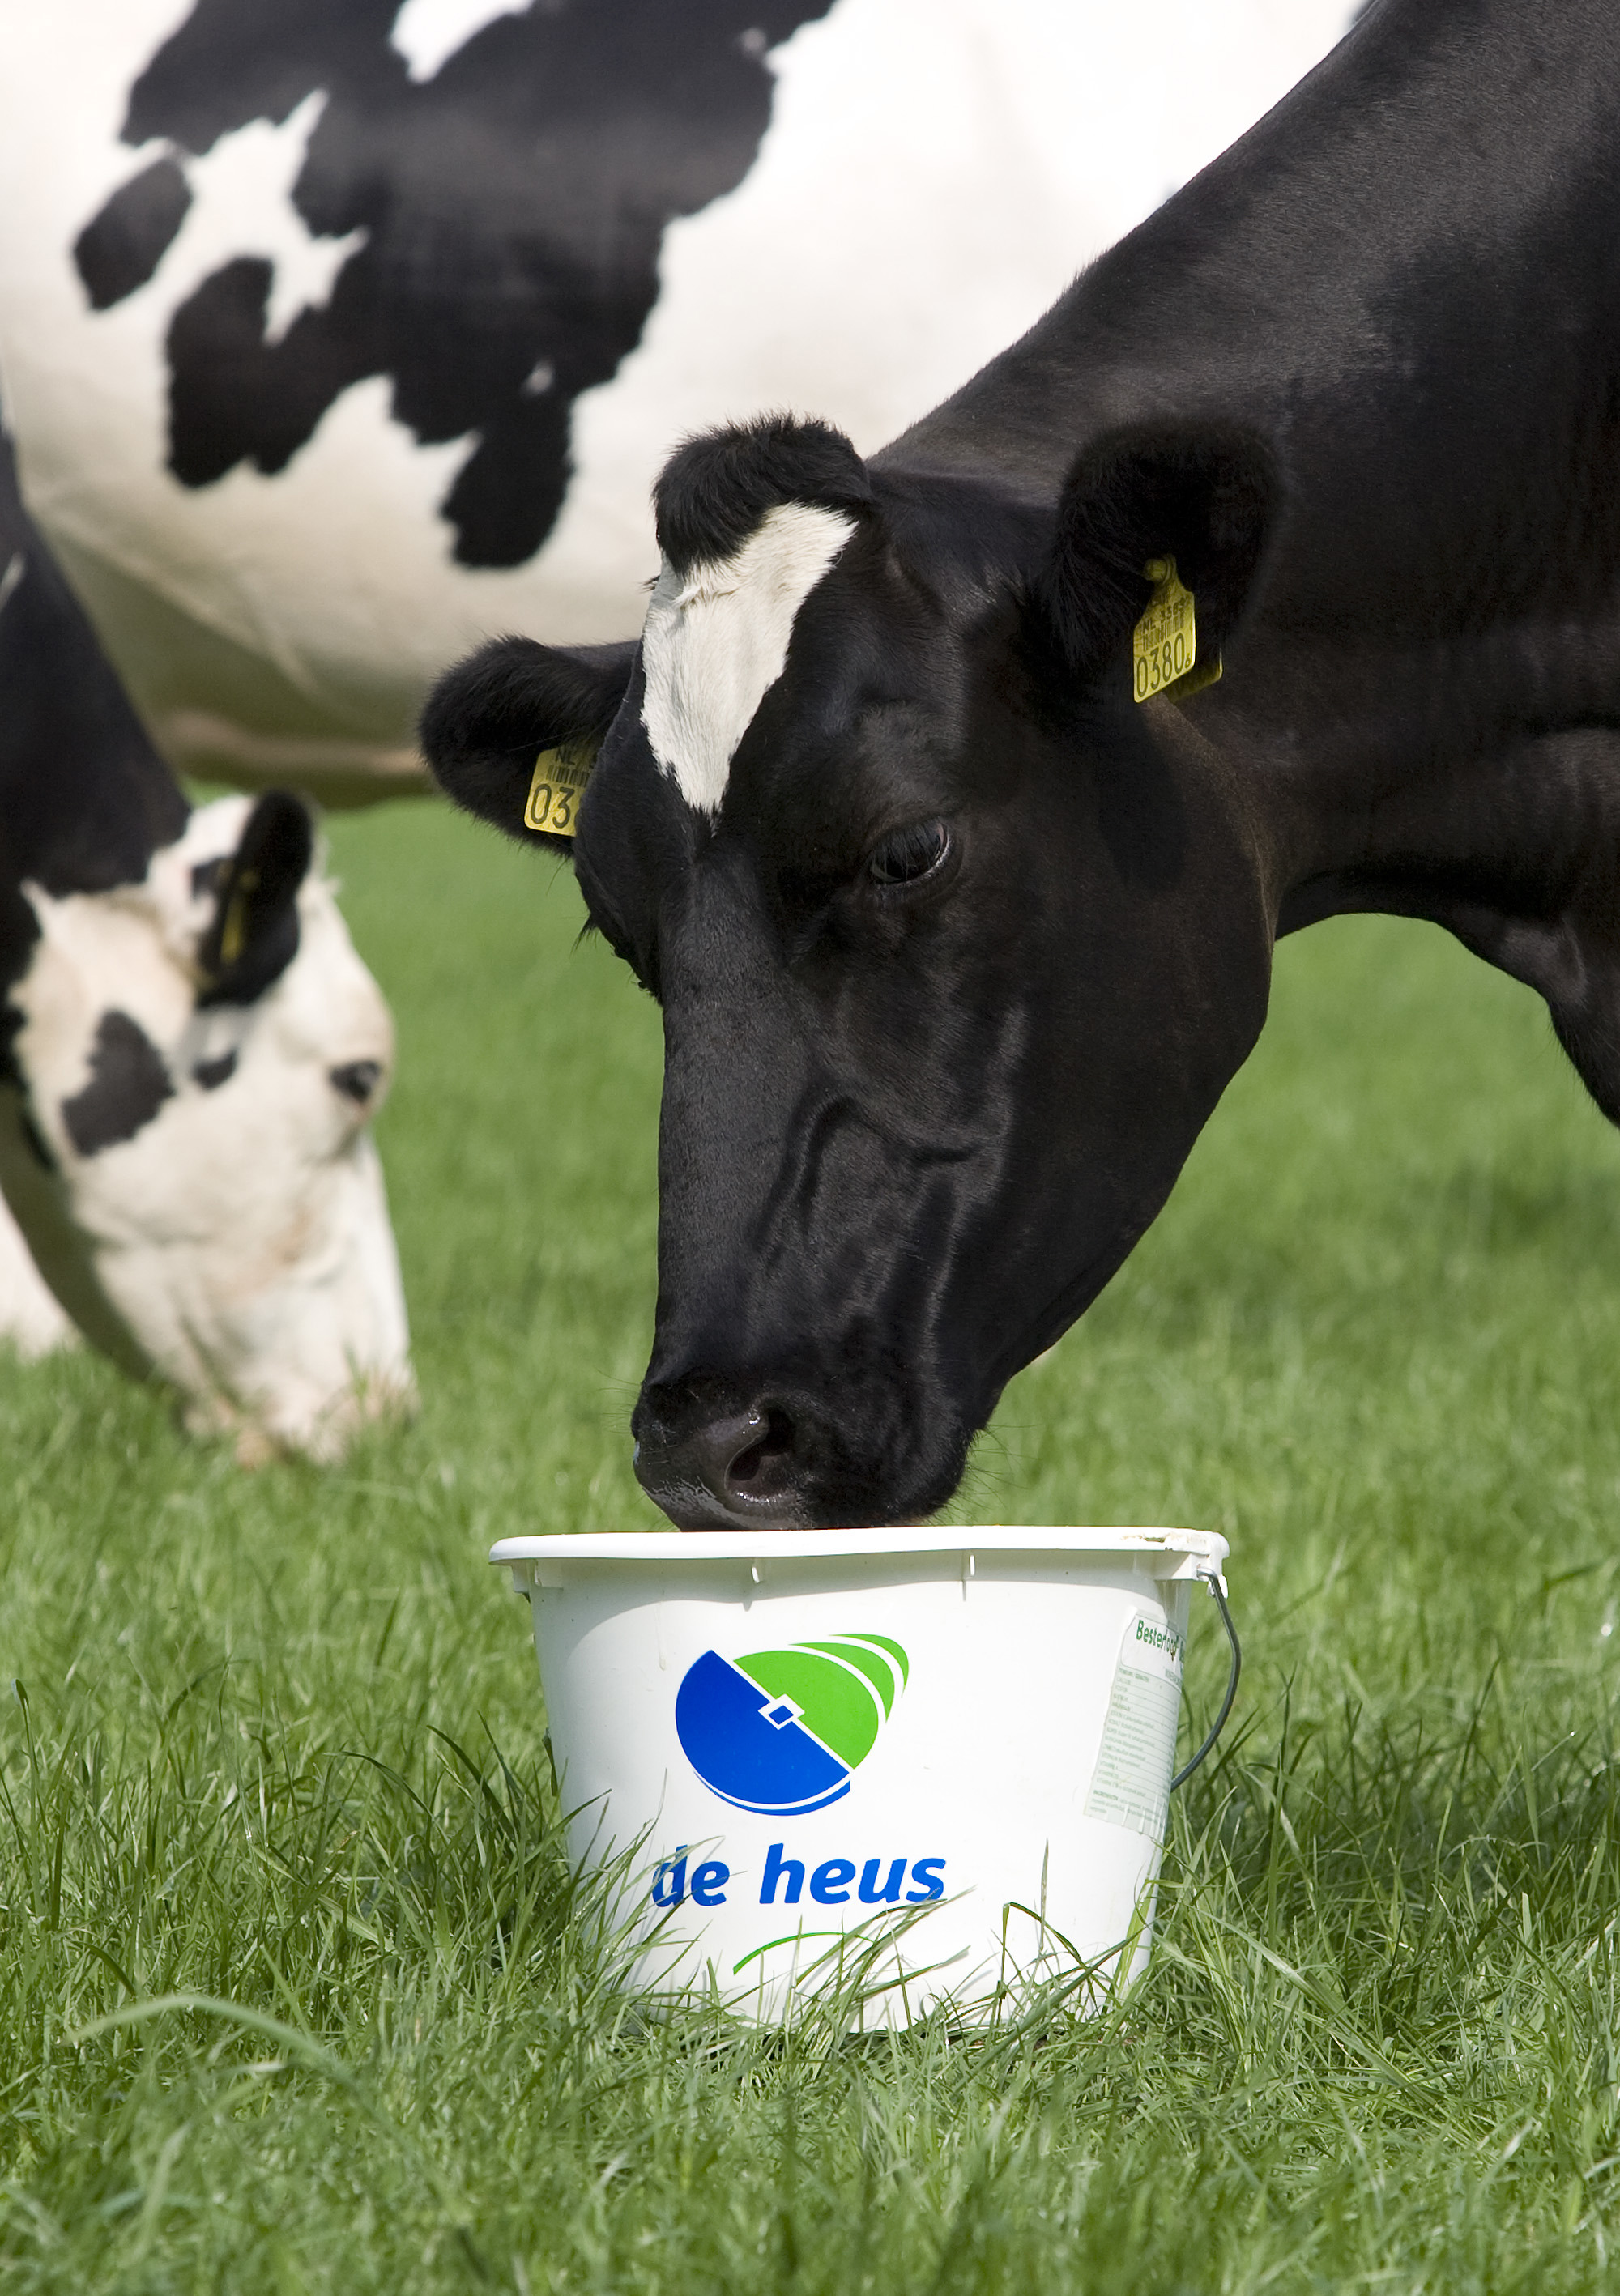 Uống sữa bò có tốt không? Những tác hại của sữa bò bạn cần biết